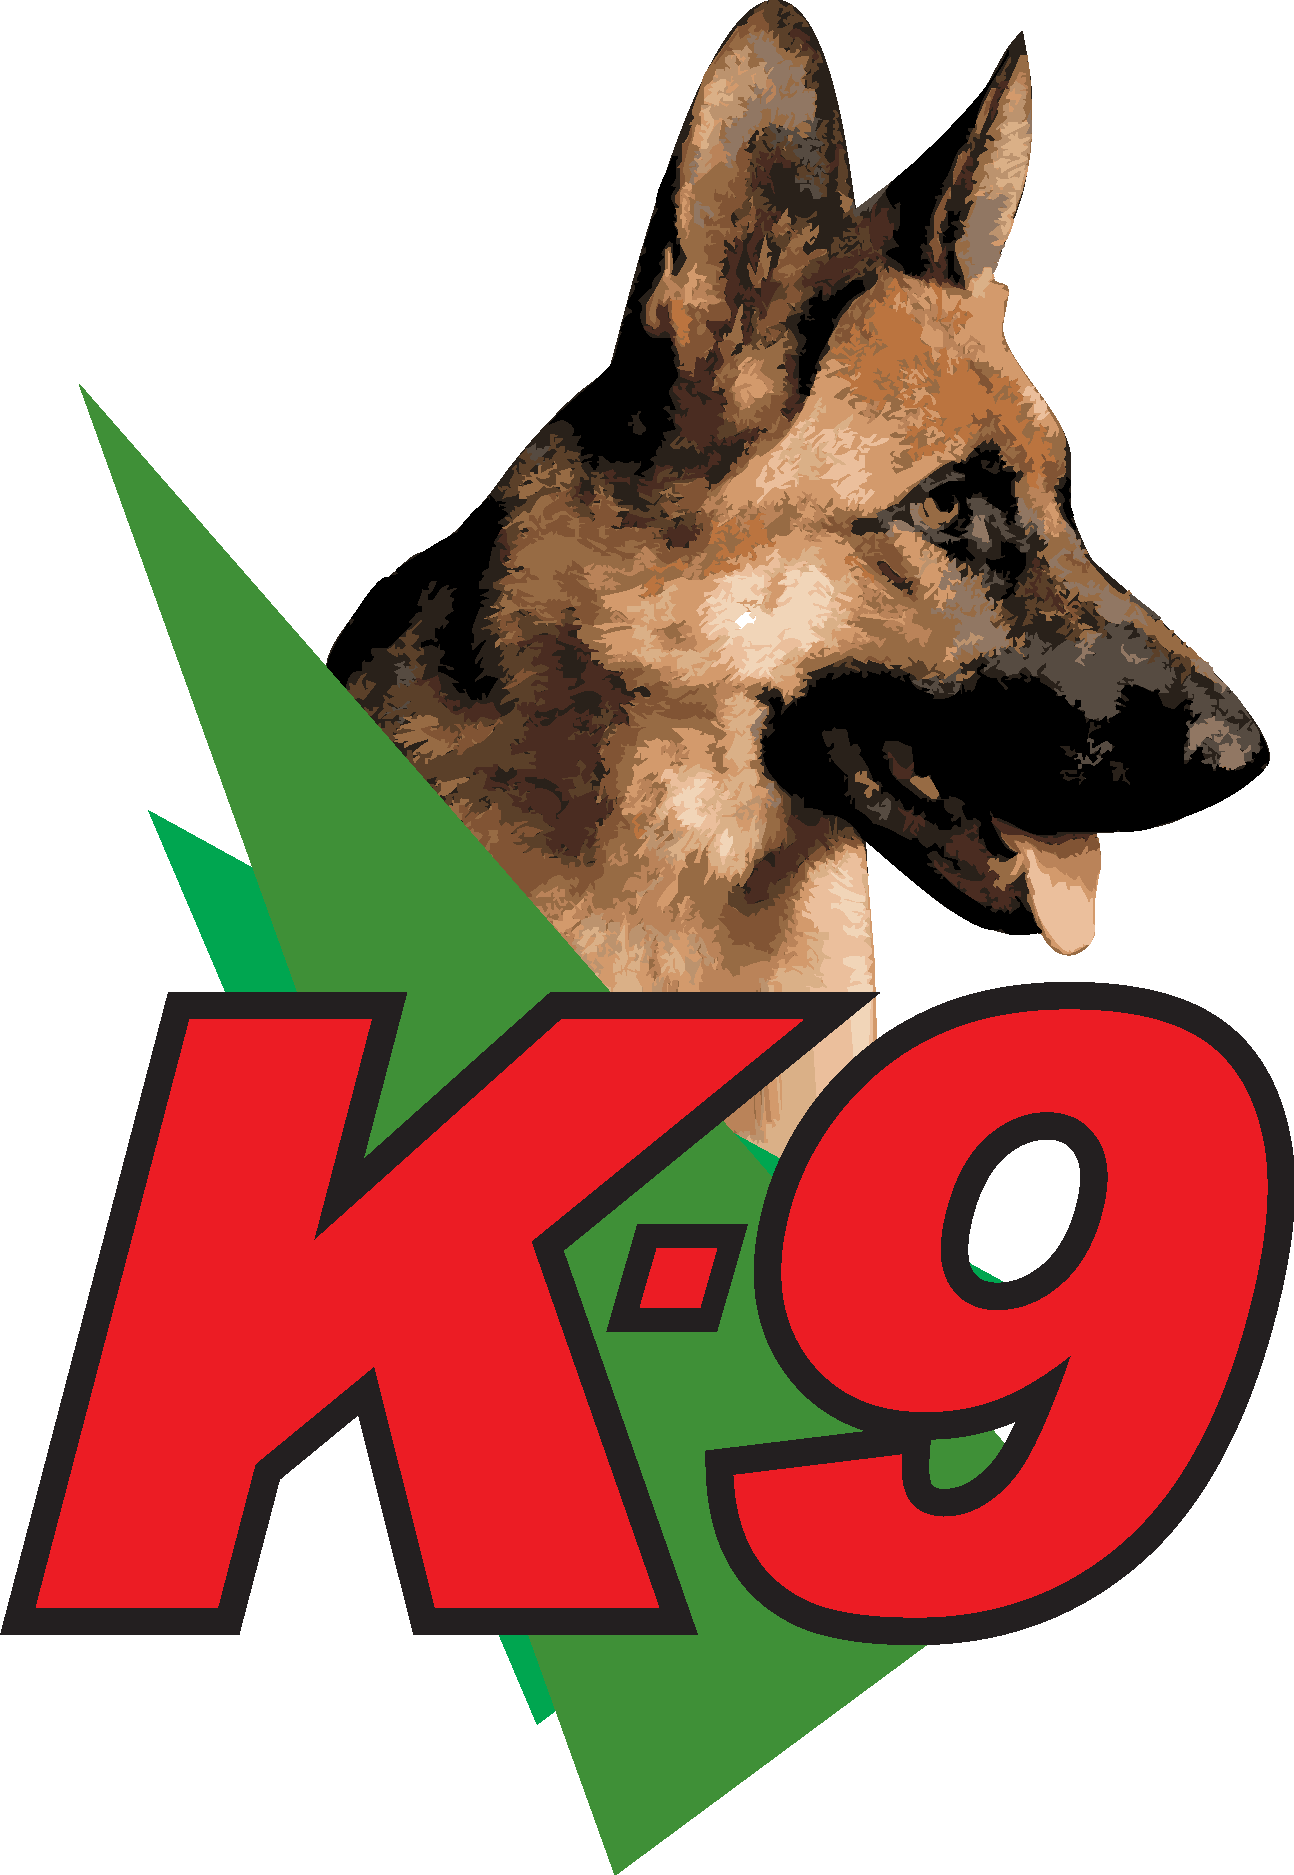 K9 Grupo Logo Vector